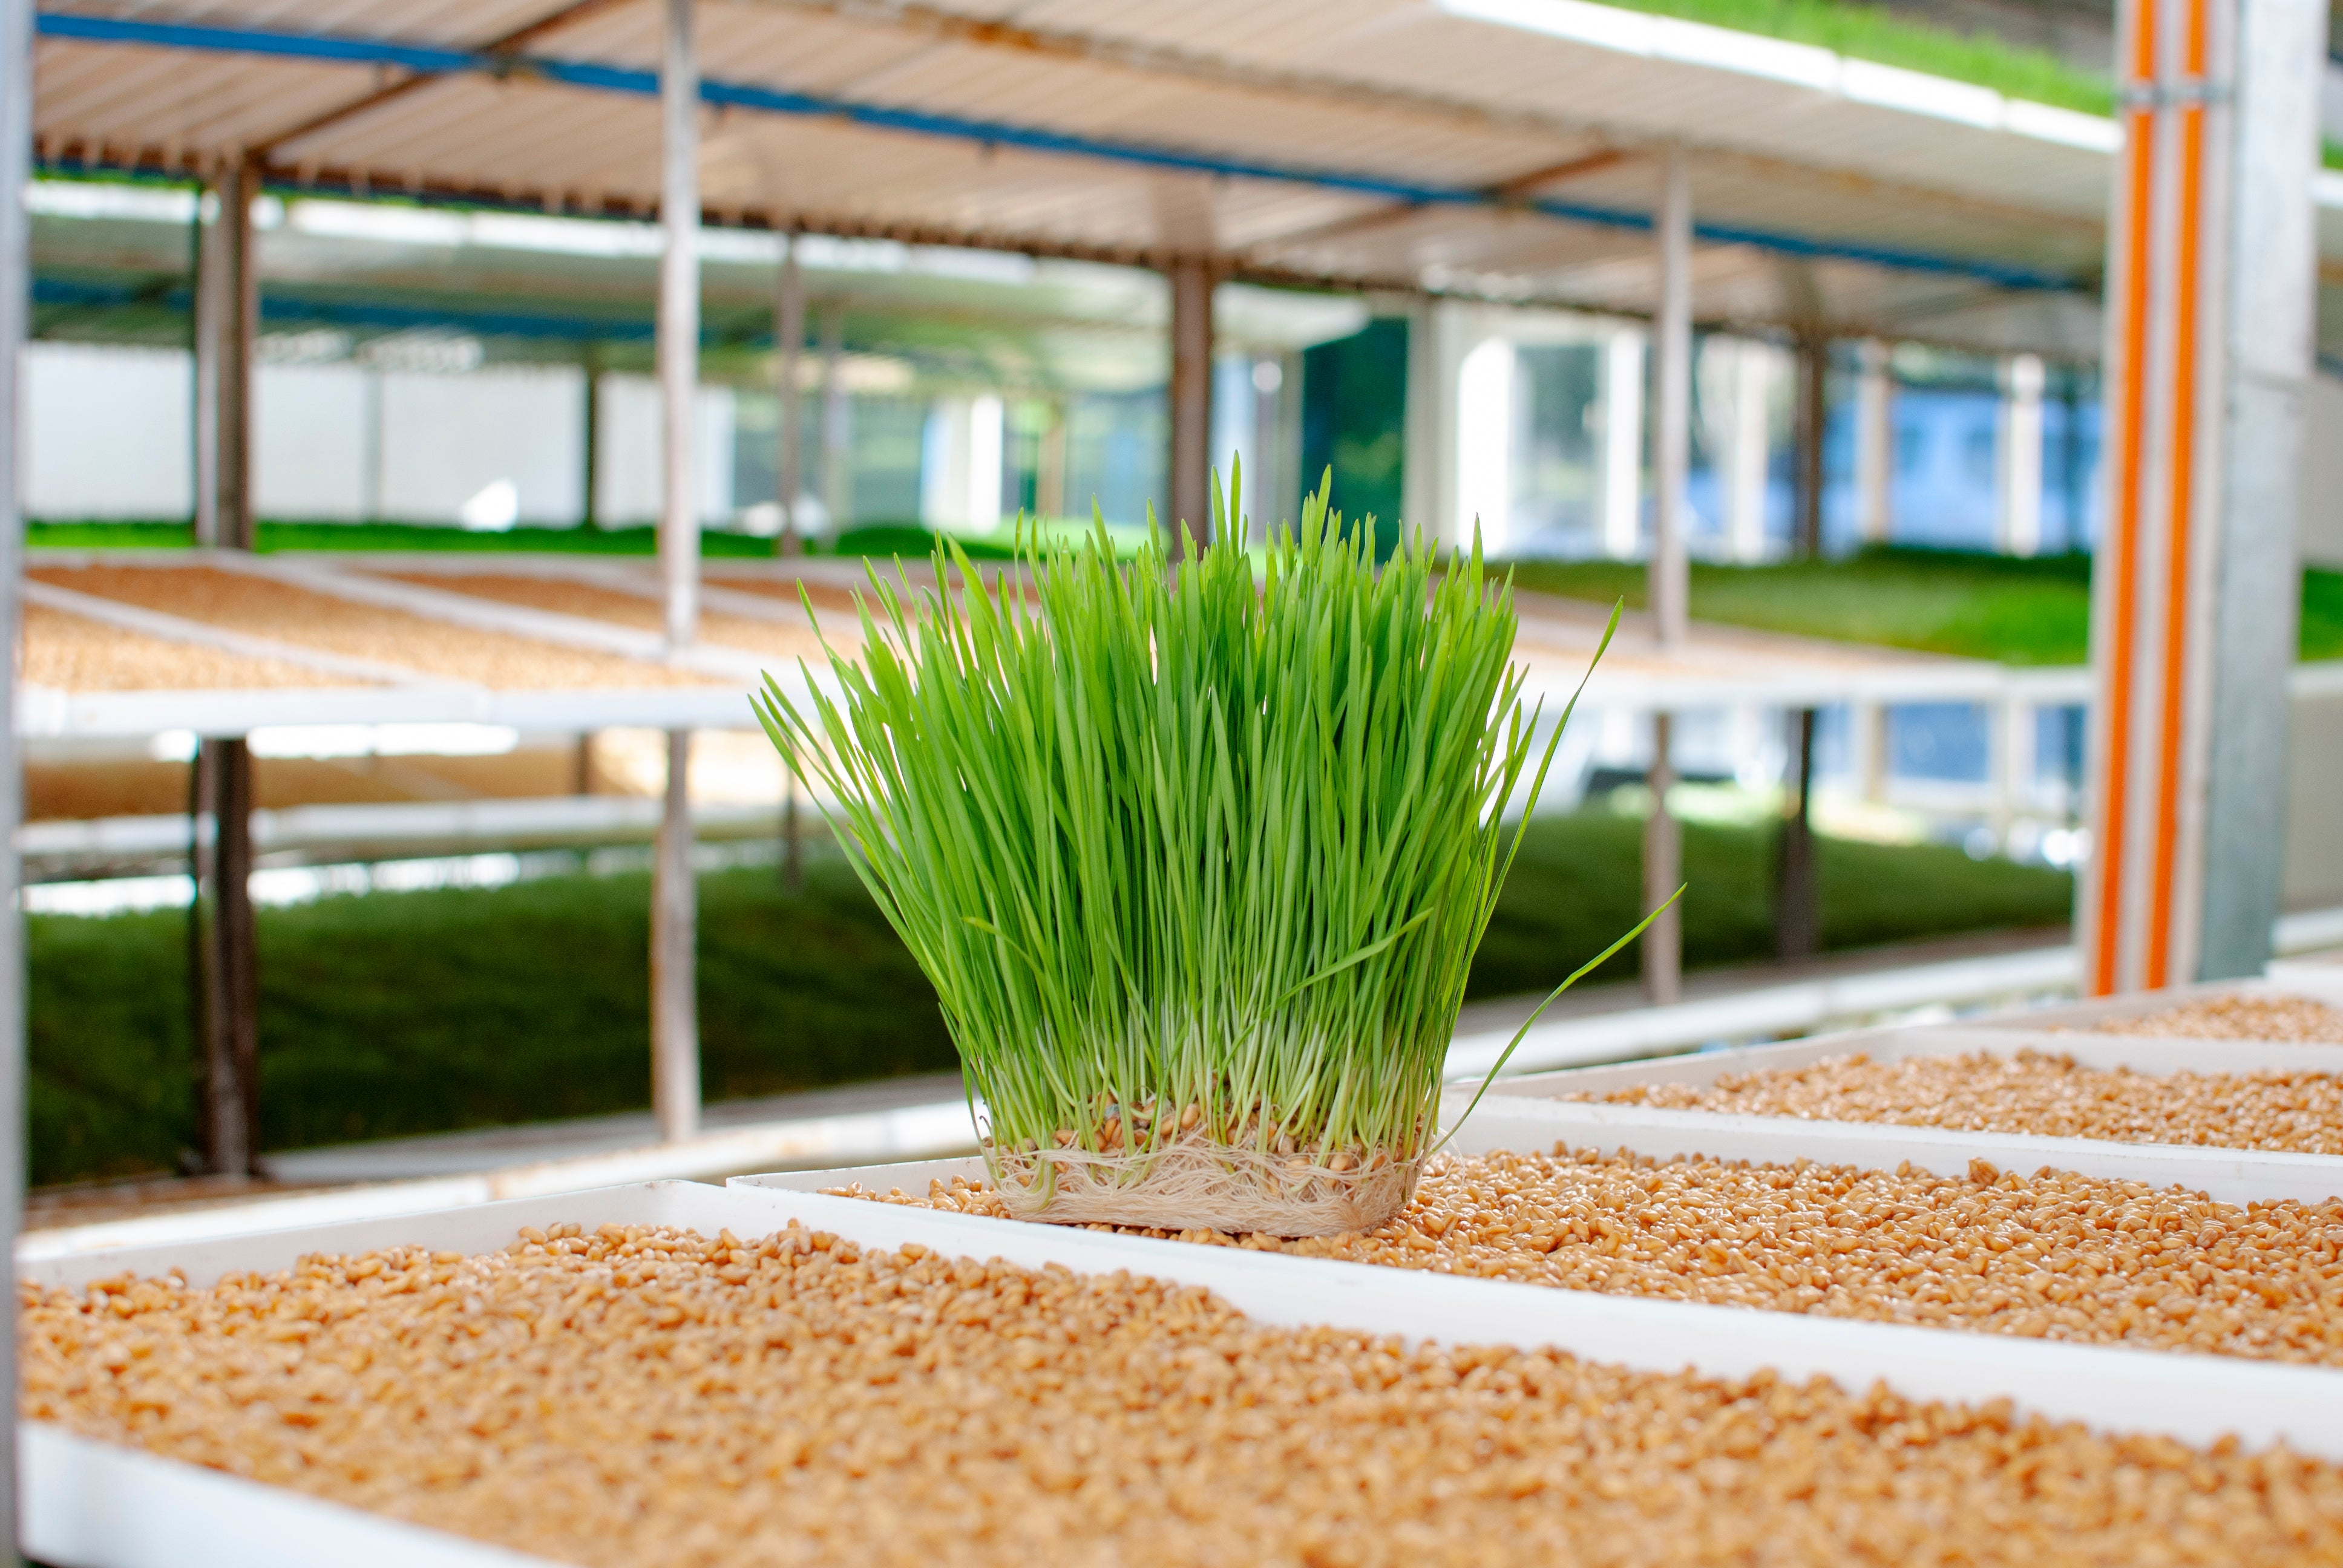 Cultivamos los brotes de trigo en una cabina térmica, esto nos permite mejorar las condiciones de temperatura y humedad para un mejor crecimiento de los brotes.